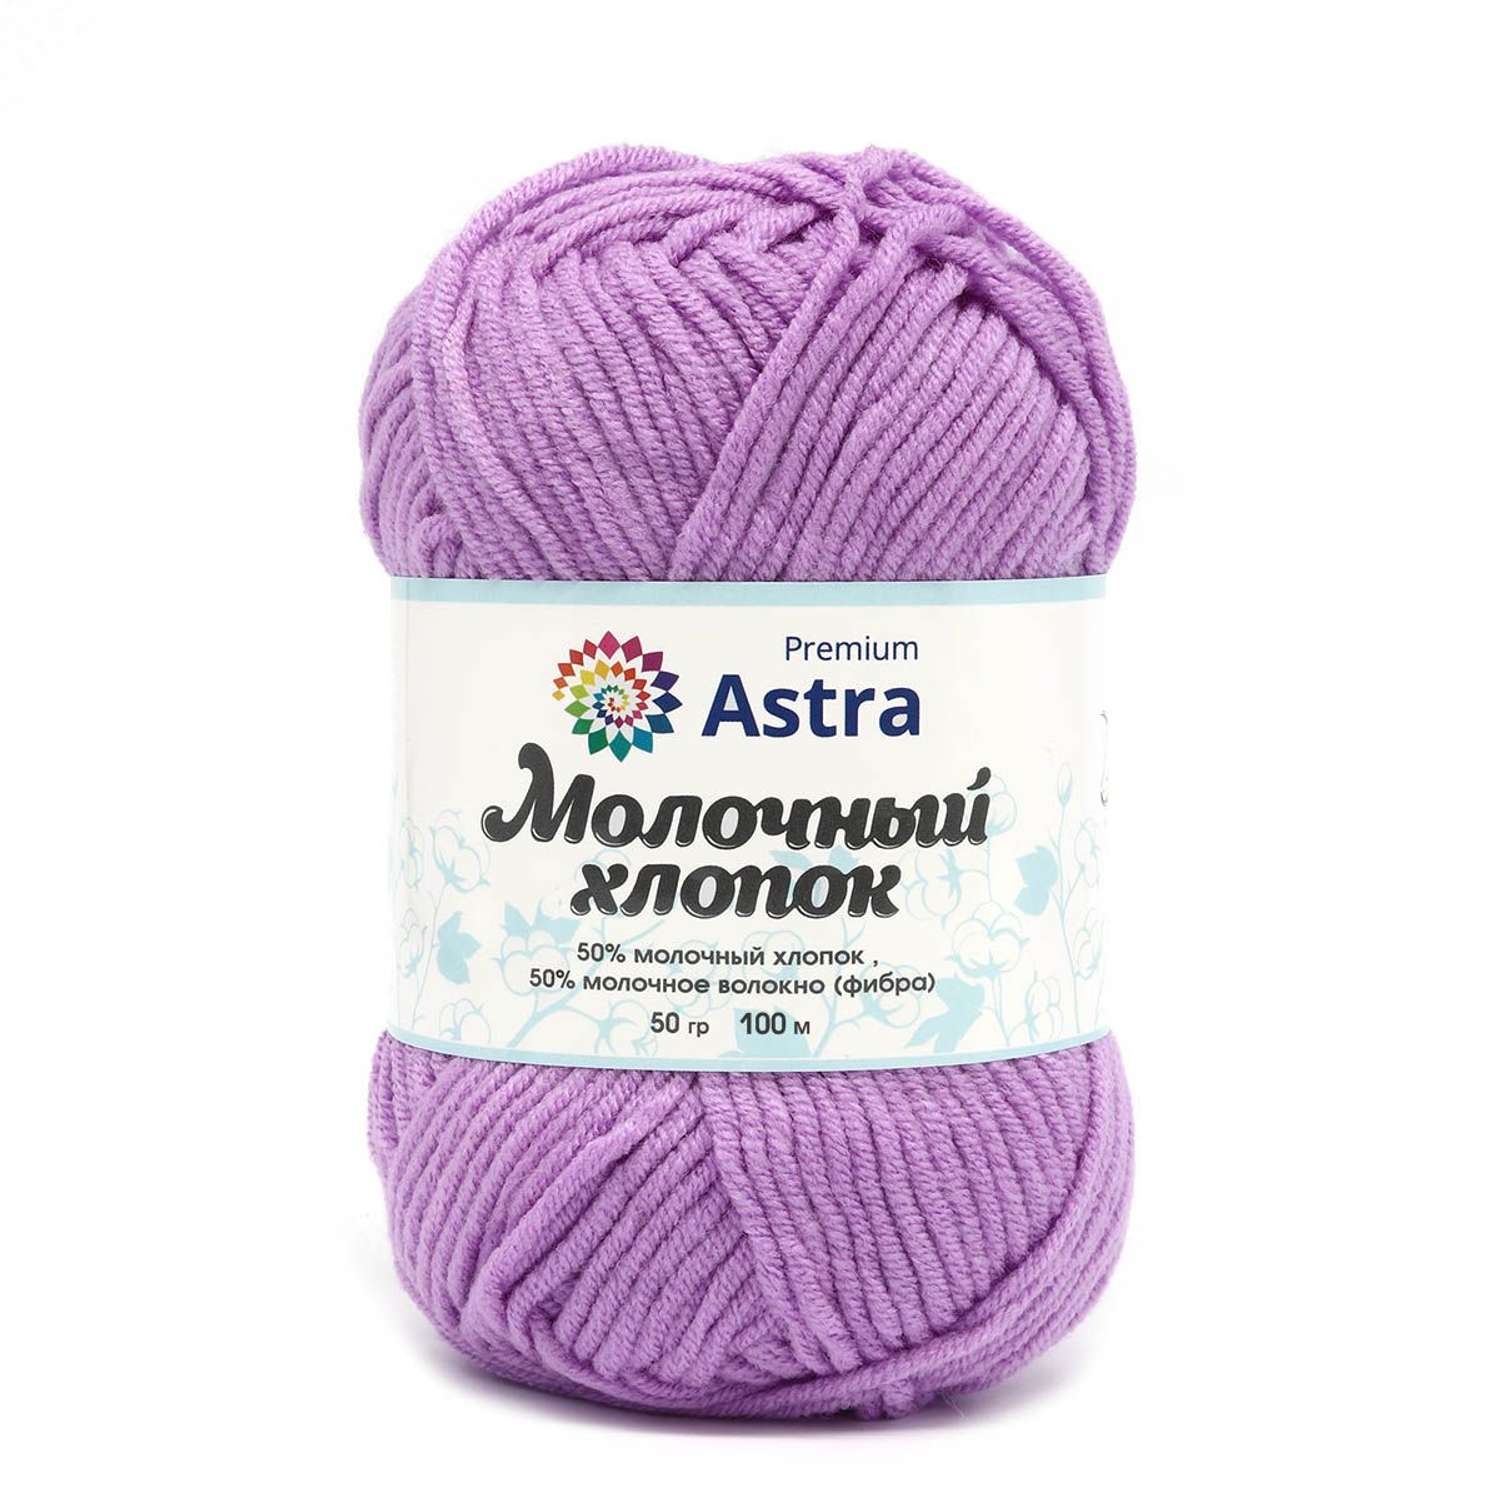 Пряжа для вязания Astra Premium milk cotton хлопок акрил 50 гр 100 м 65 сиреневый 3 мотка - фото 10